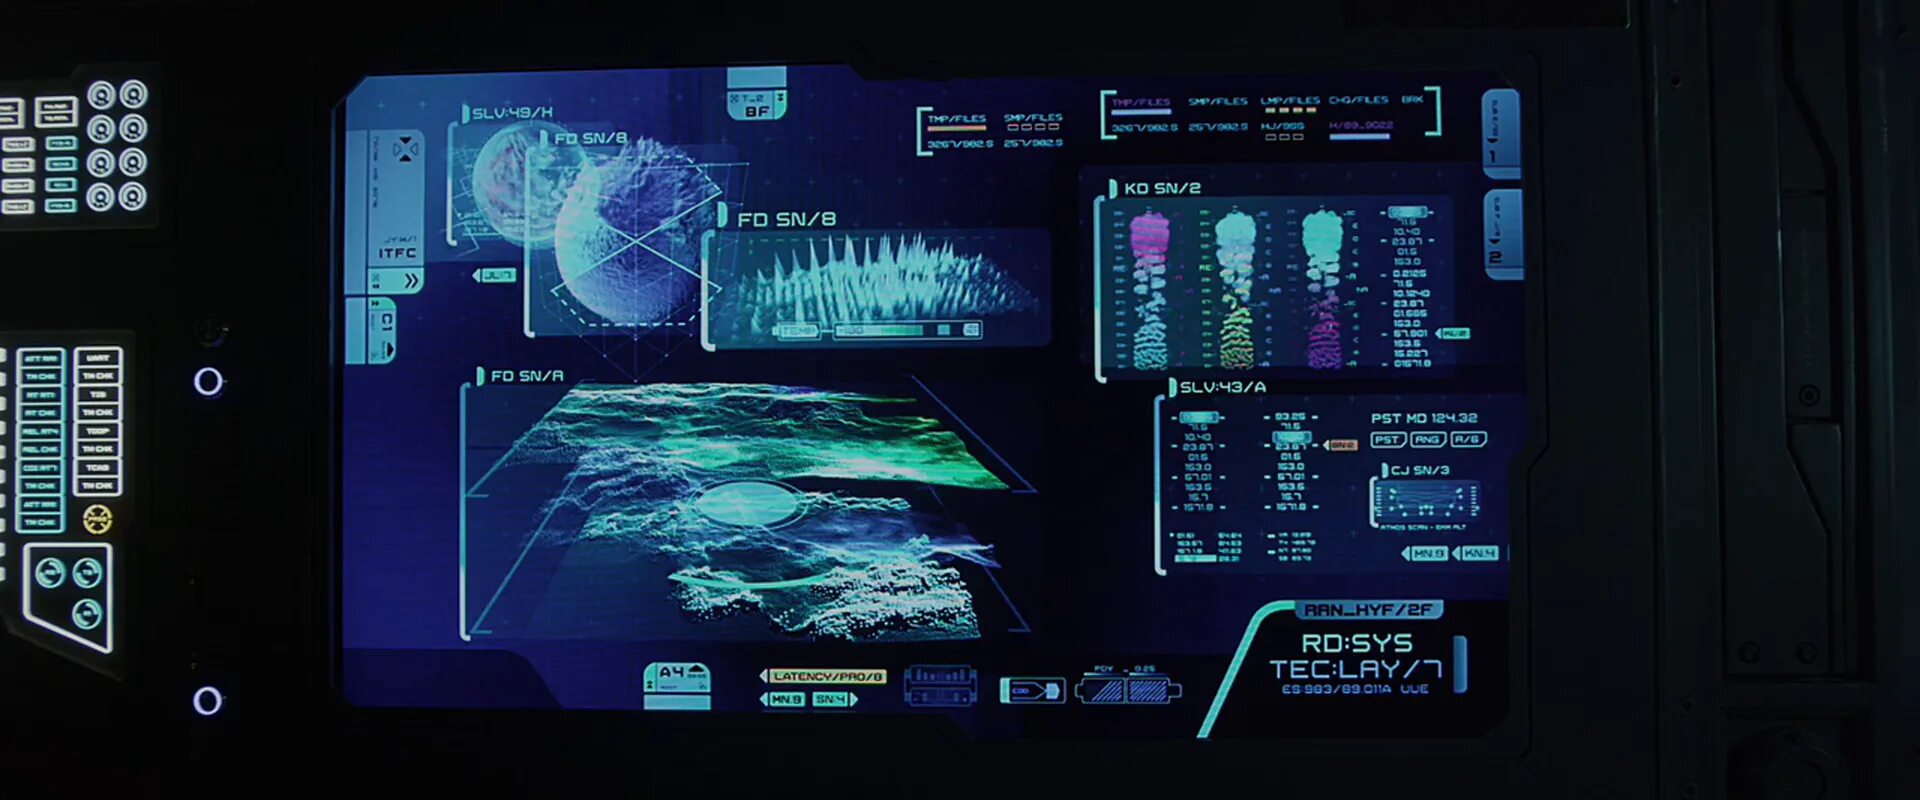 Интерфейс космического корабля. Панель управления космического корабля. Космический дисплей. Экран космического корабля.